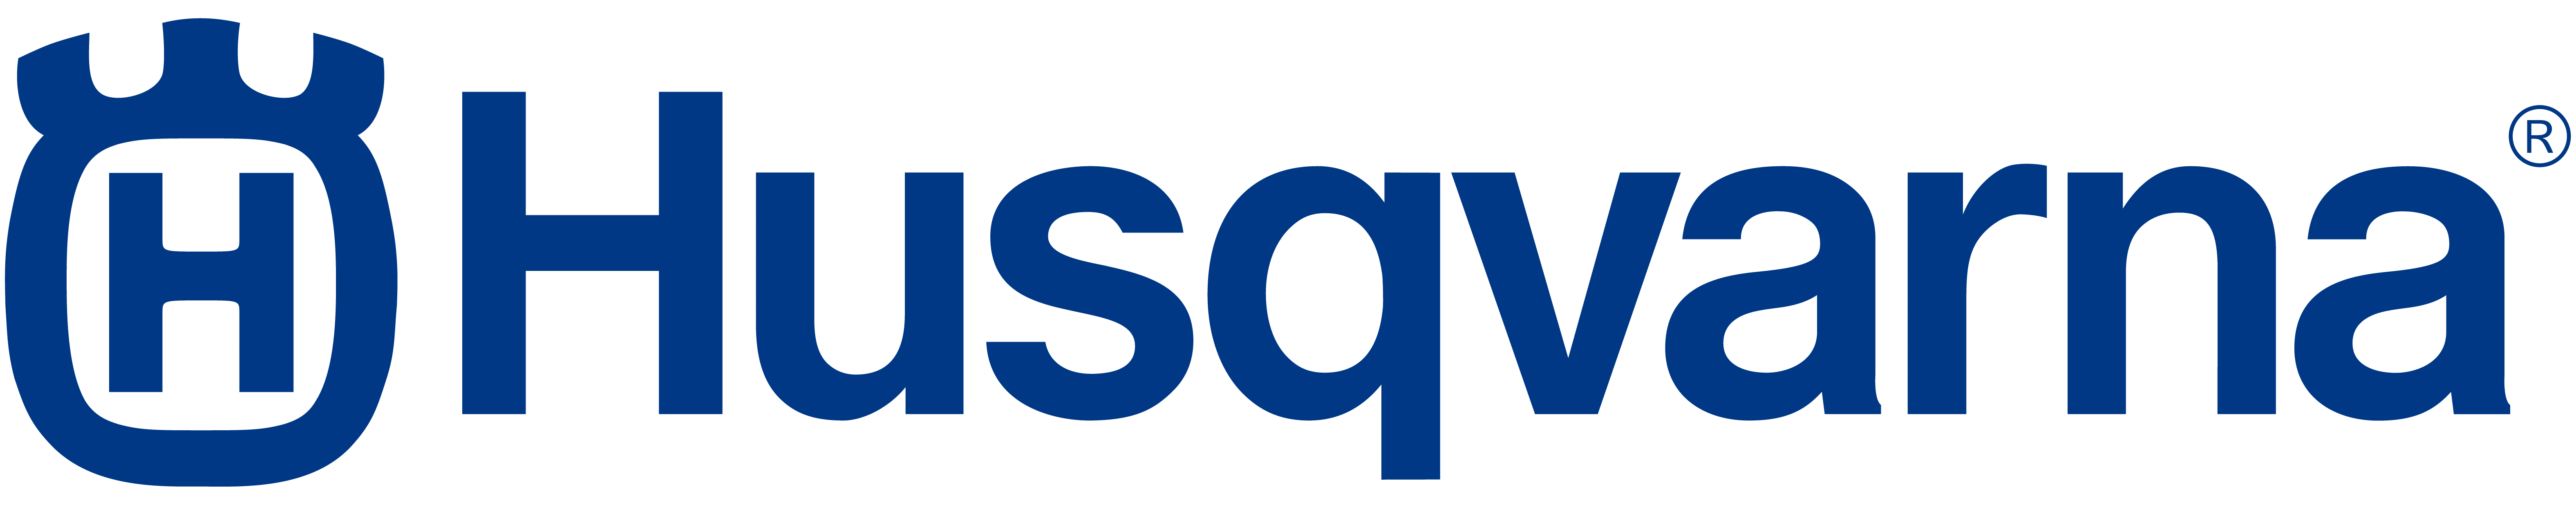 Husqvarna-company-logo